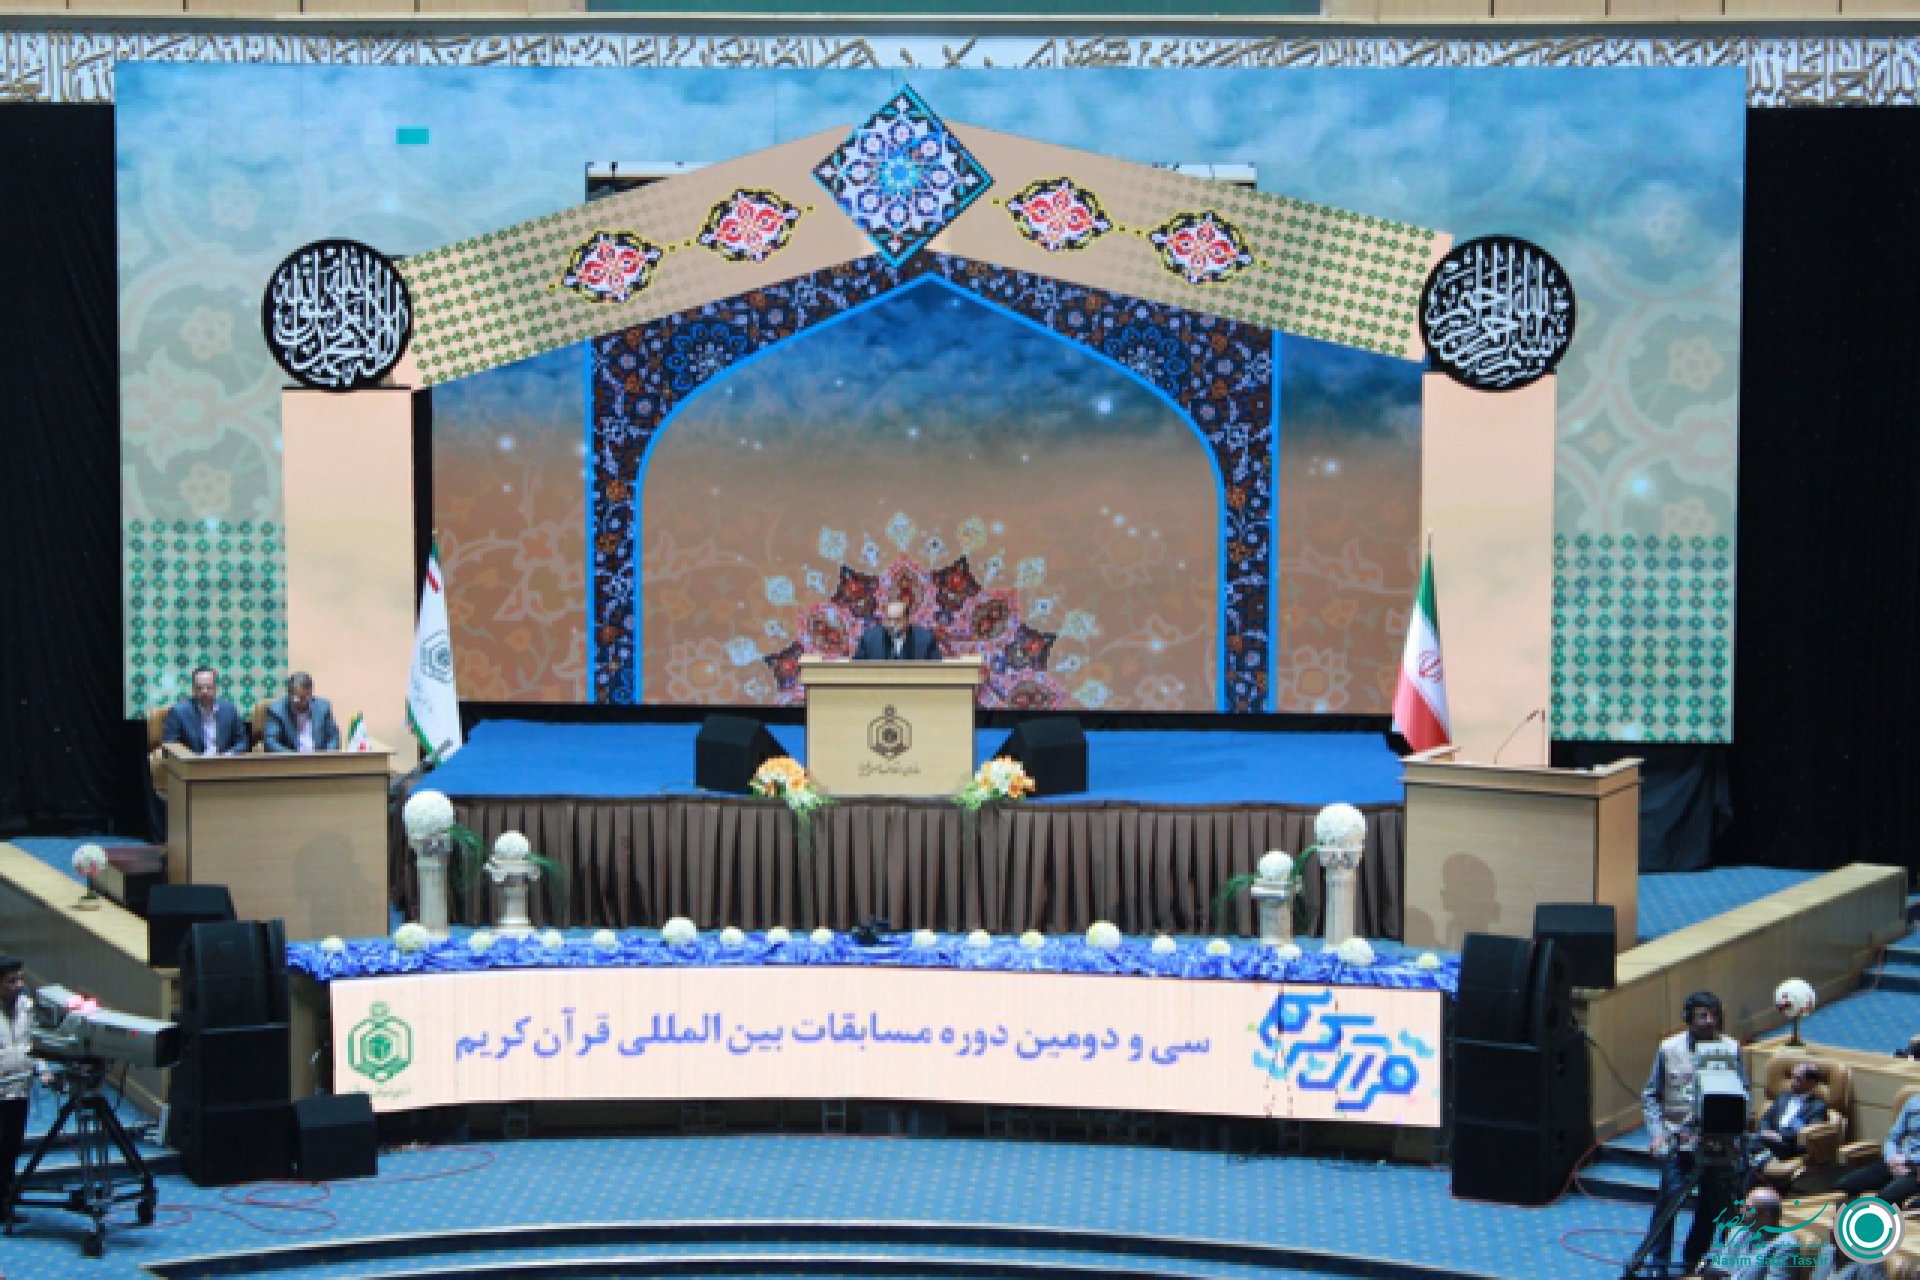 بازخوانی و مرور اجرای بزرگترین دکور دیجیتال ایران 602